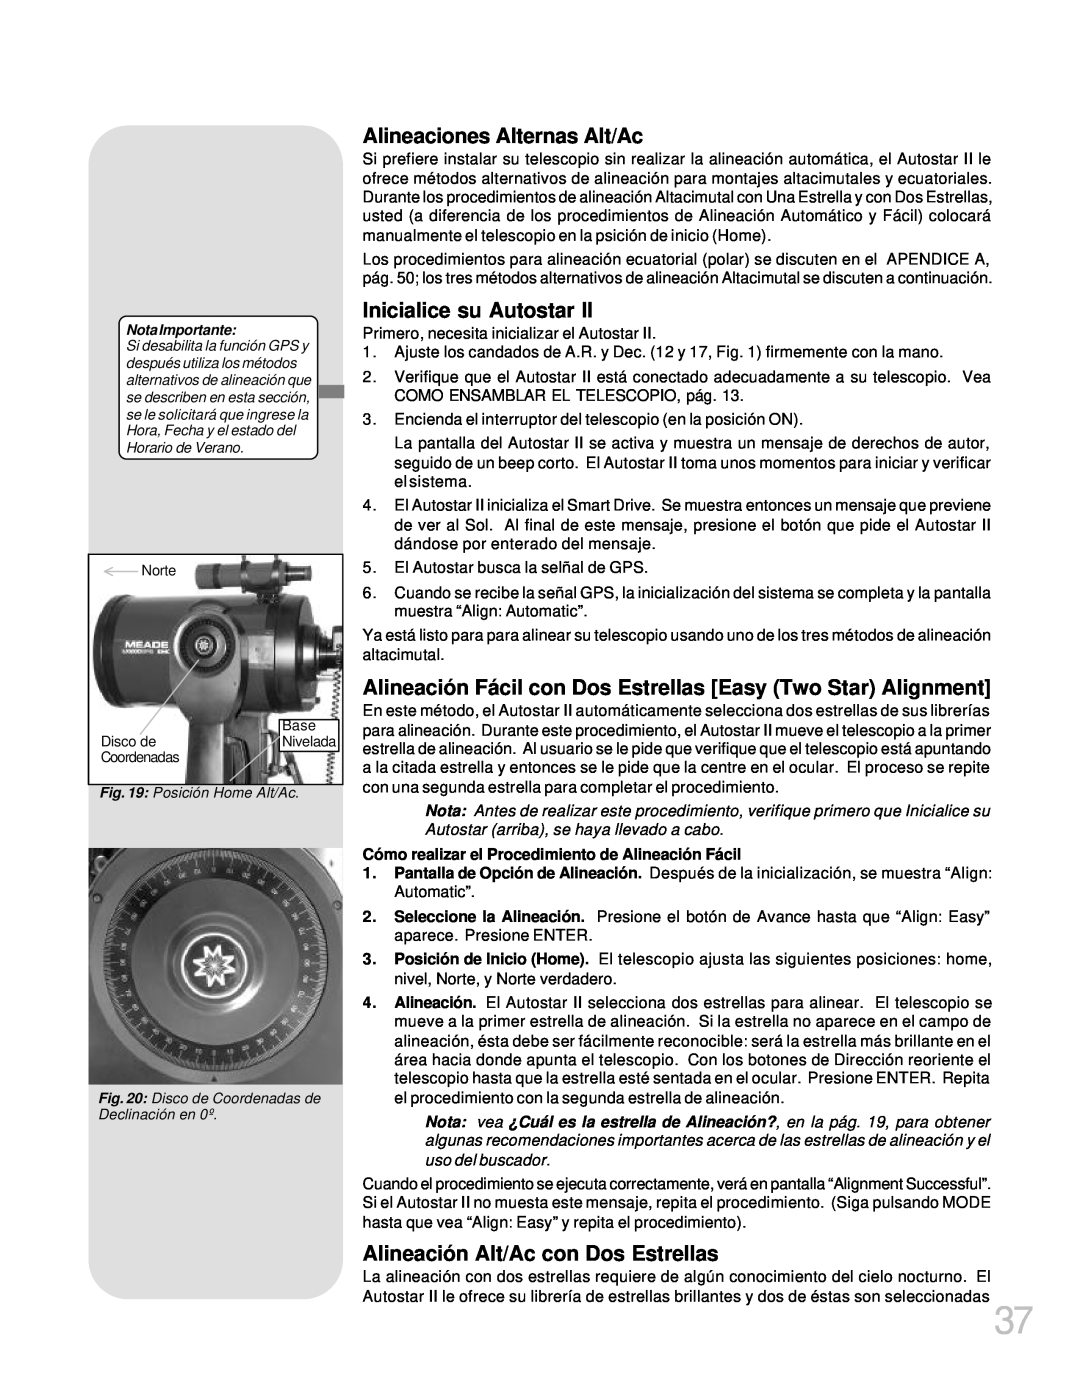 Meade LX200GPS manual Alineaciones Alternas Alt/Ac, Inicialice su Autostar, Alineación Alt/Ac con Dos Estrellas 